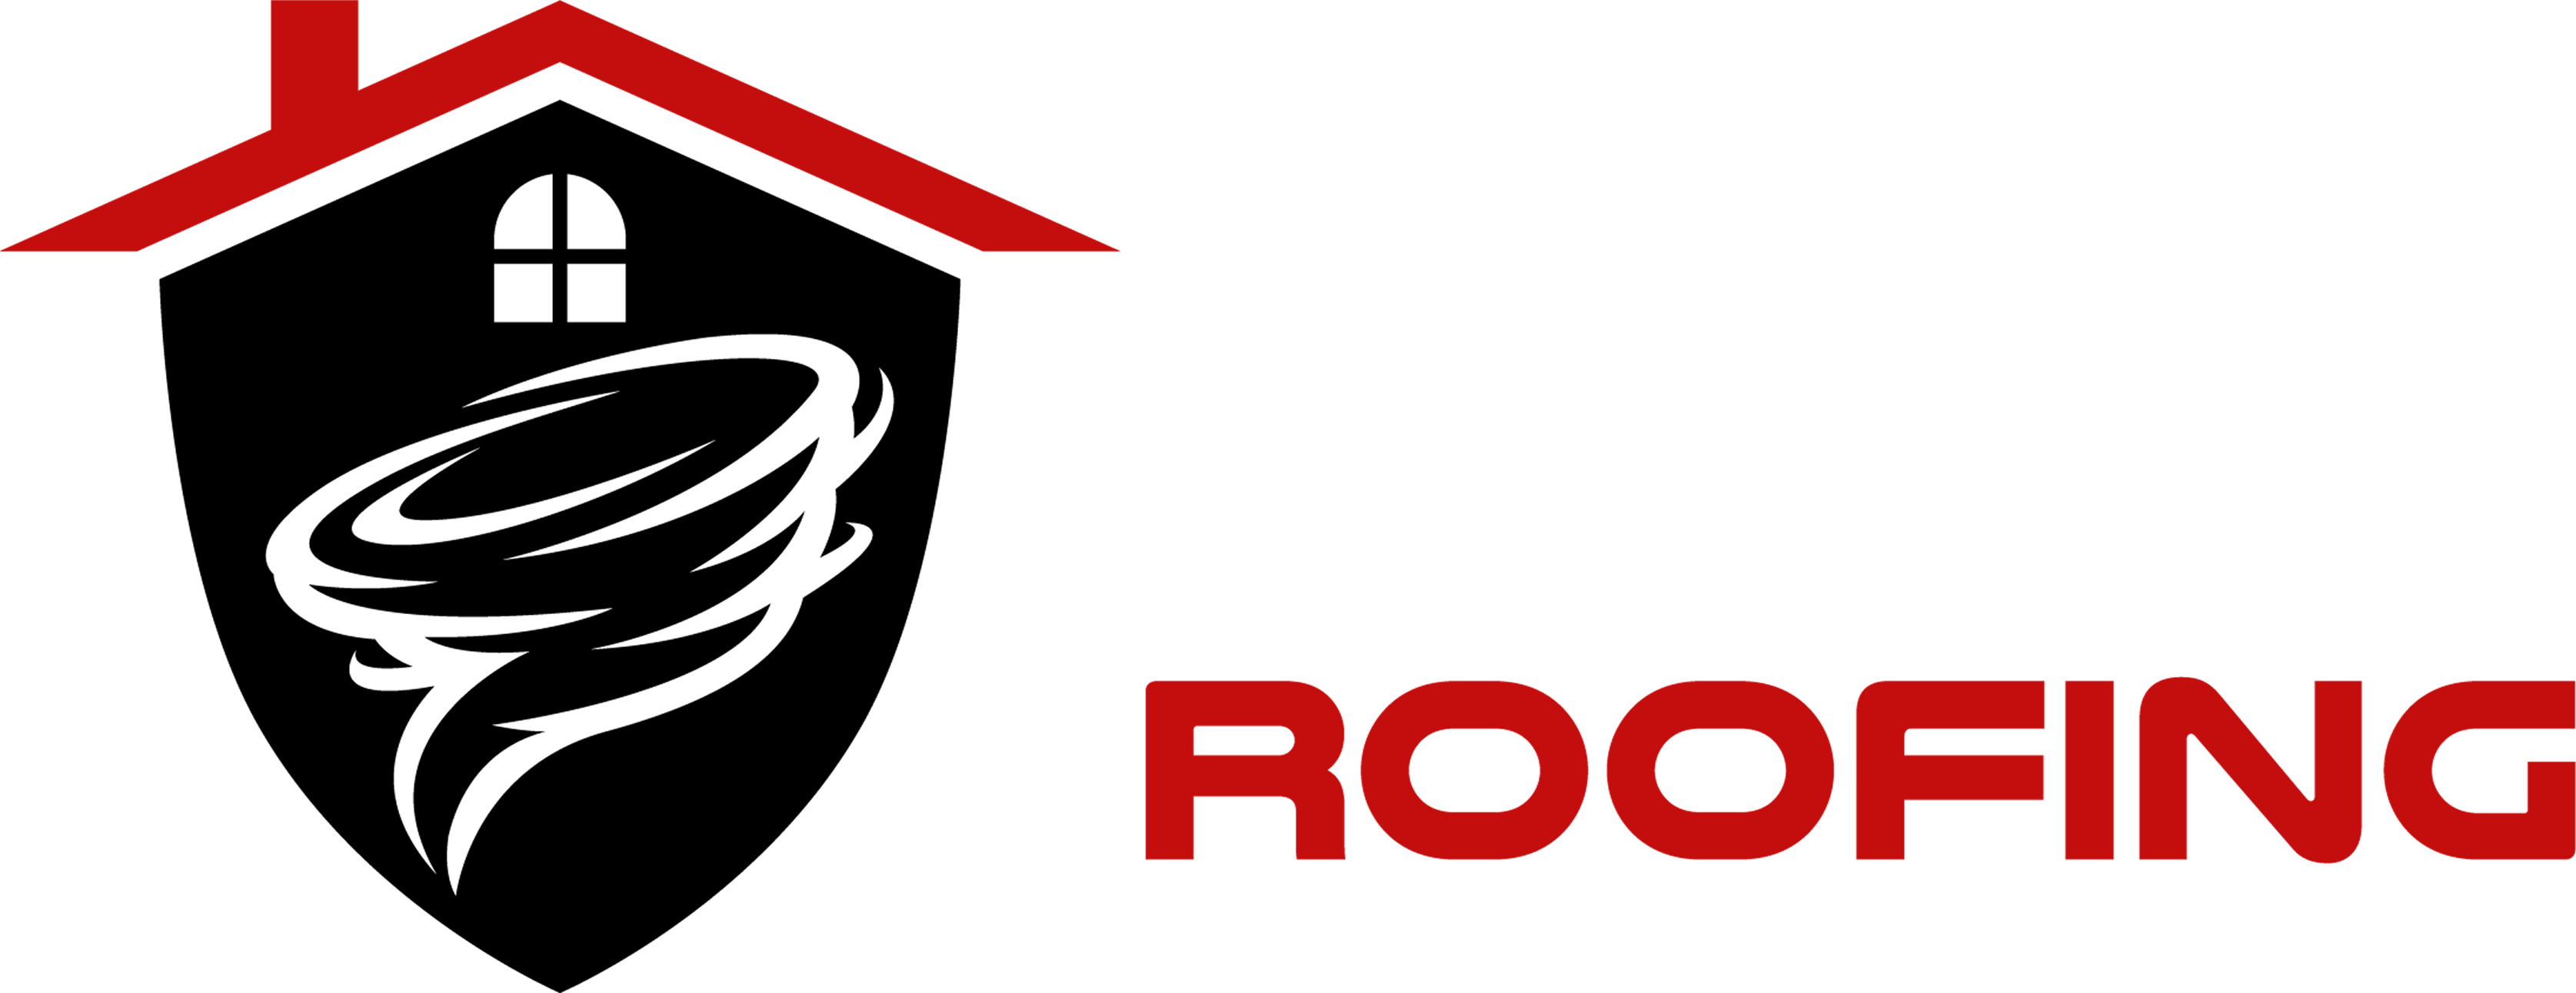 SSR Roofing Atlanta